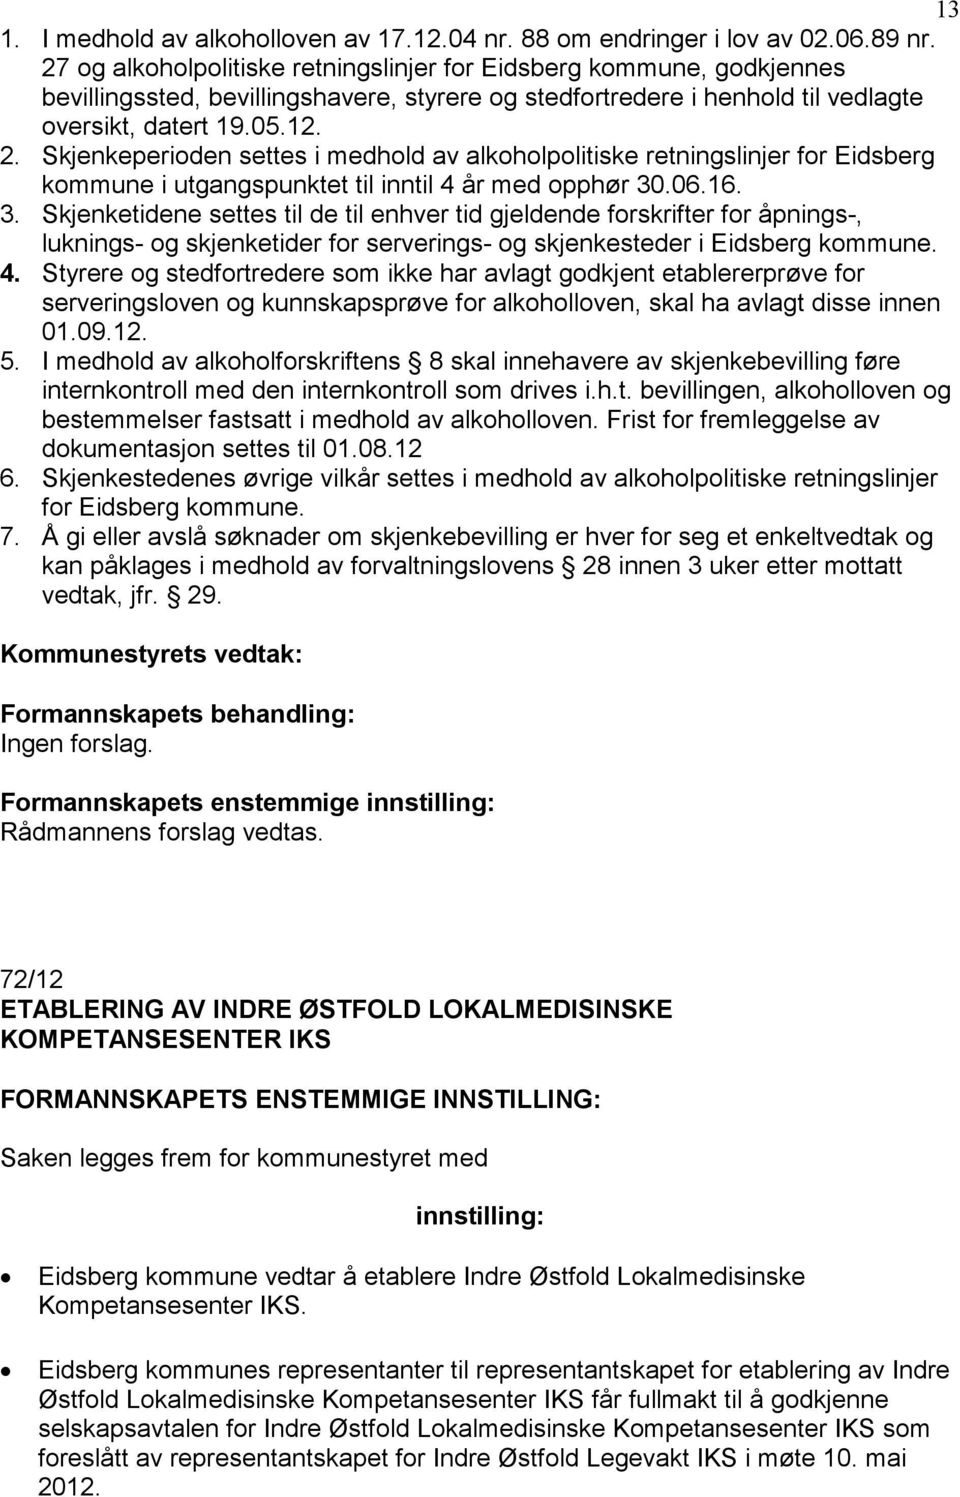 Skjenkeperioden settes i medhold av alkoholpolitiske retningslinjer for Eidsberg kommune i utgangspunktet til inntil 4 år med opphør 30